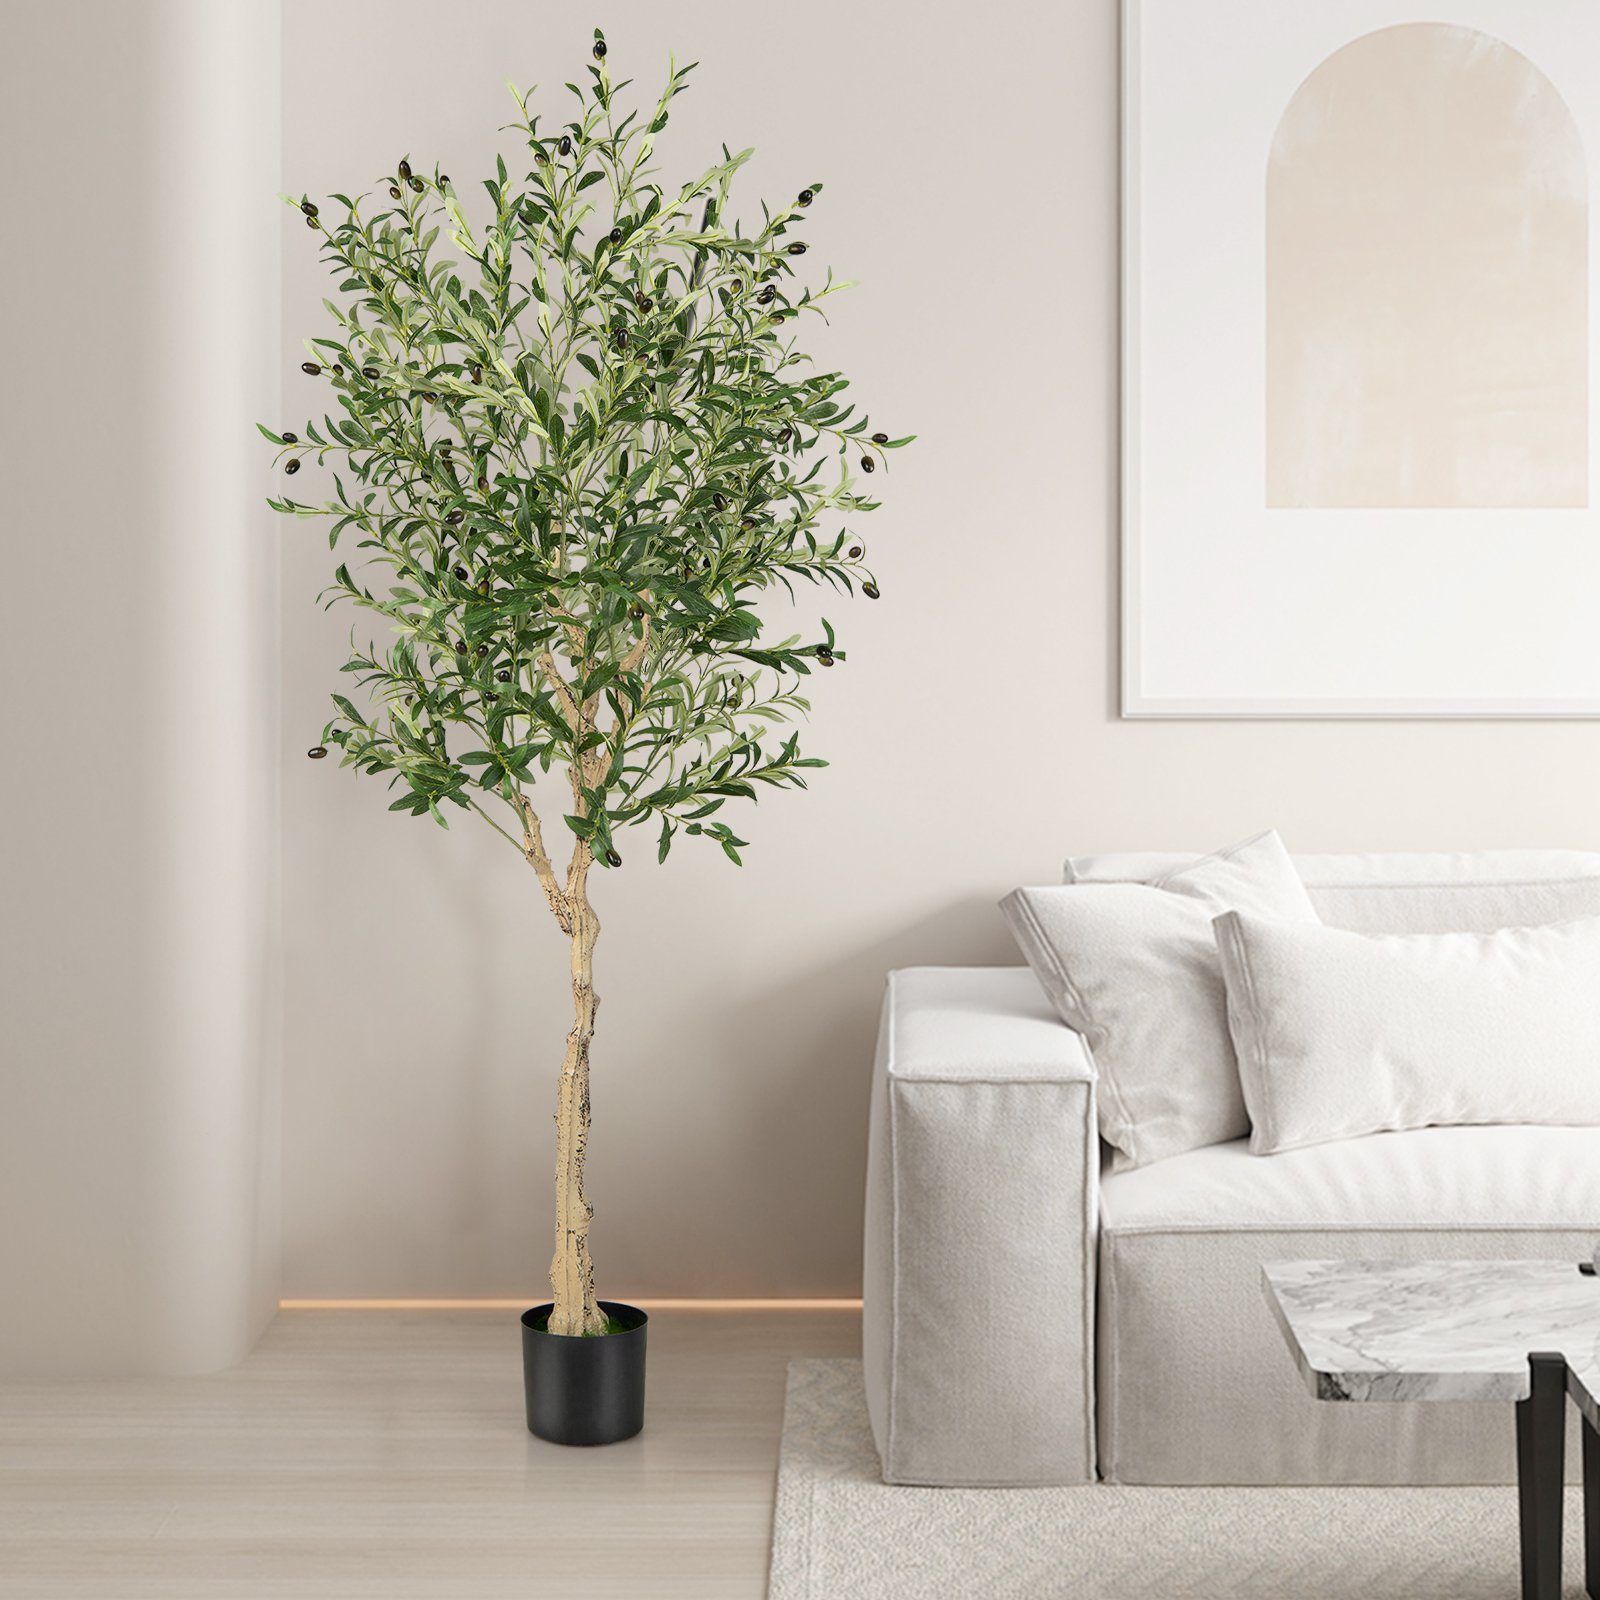 Kunstpflanze Olivenbaum, 182 72 2er, Höhe COSTWAY, mit cm, Früchten